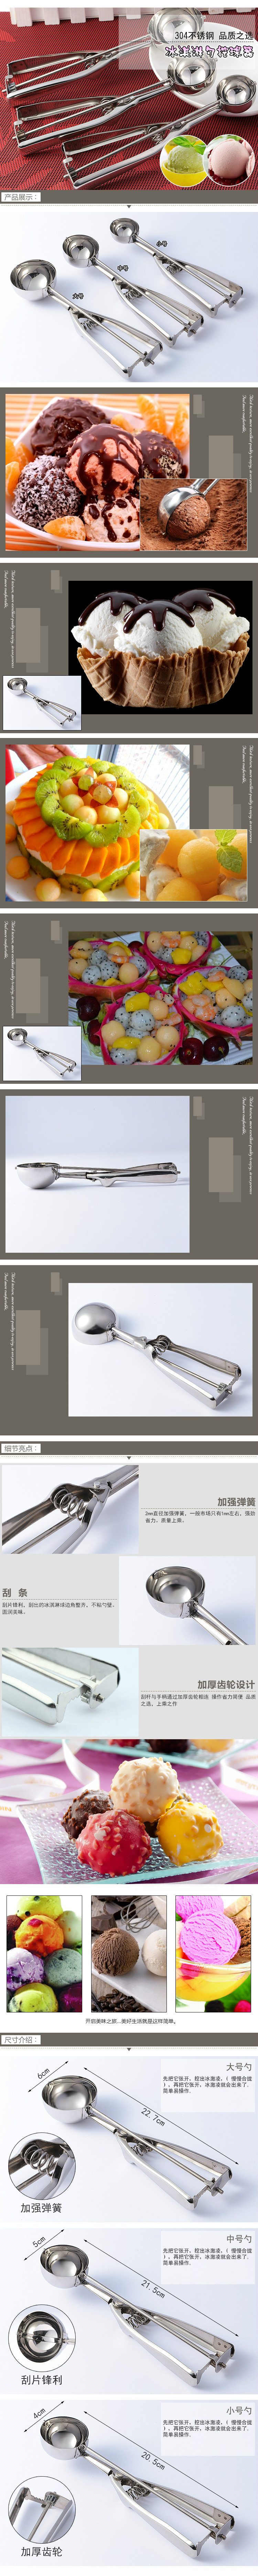 Gadget cuisine - grand 6cm  moyen 5cm  trompette 4cm  - Ref 3405630 Image 8